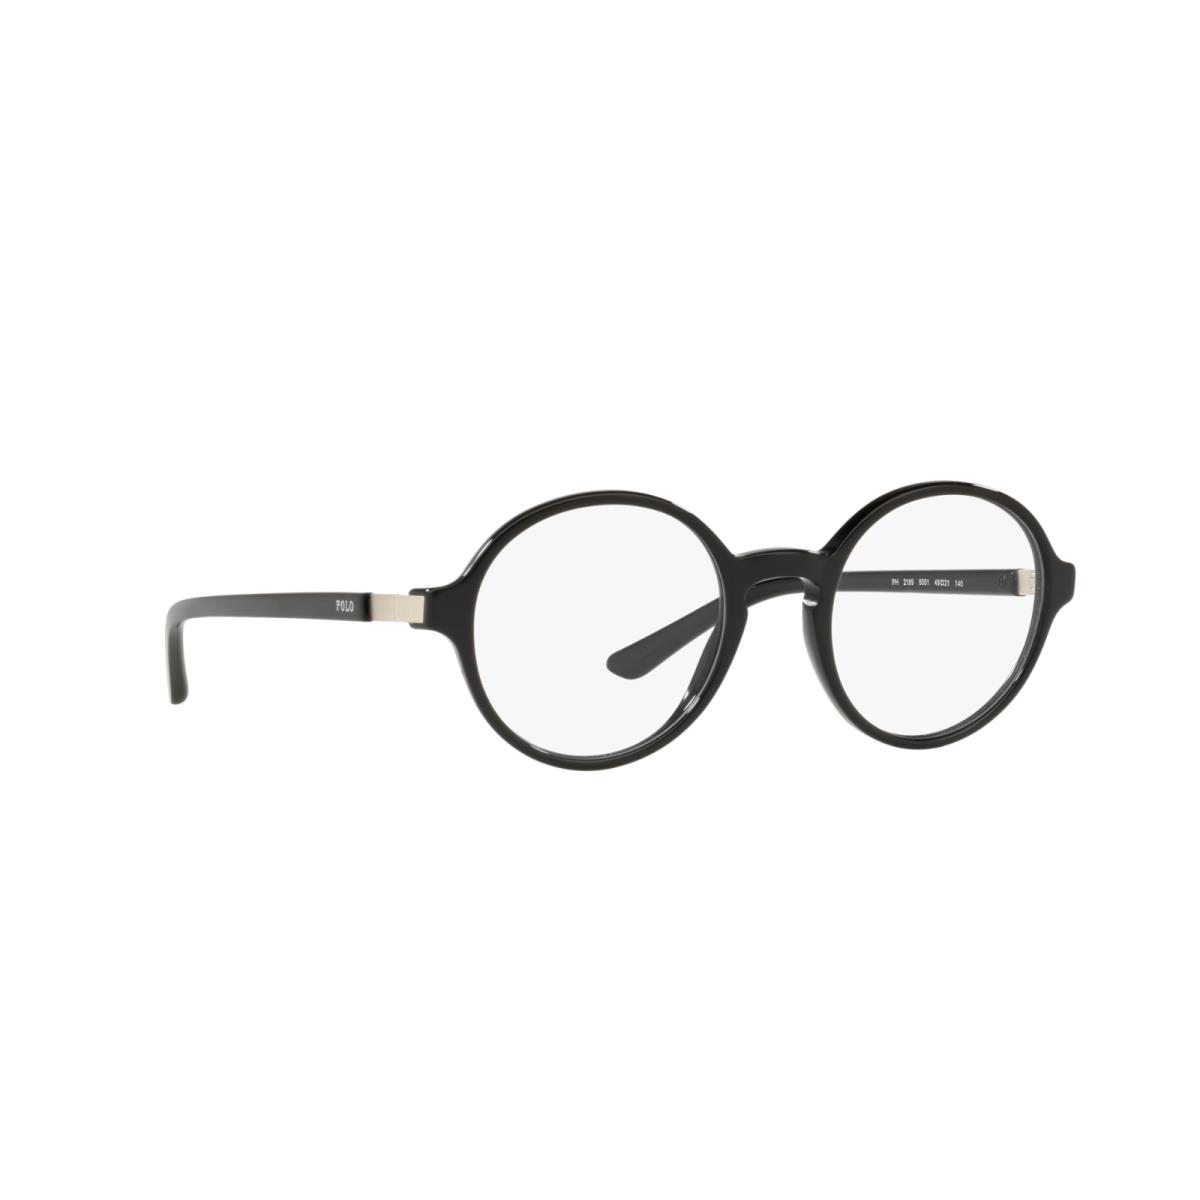 Polo Ralph Lauren PH 2189 5001 Plastic Eyeglasses Frame 49-21-140